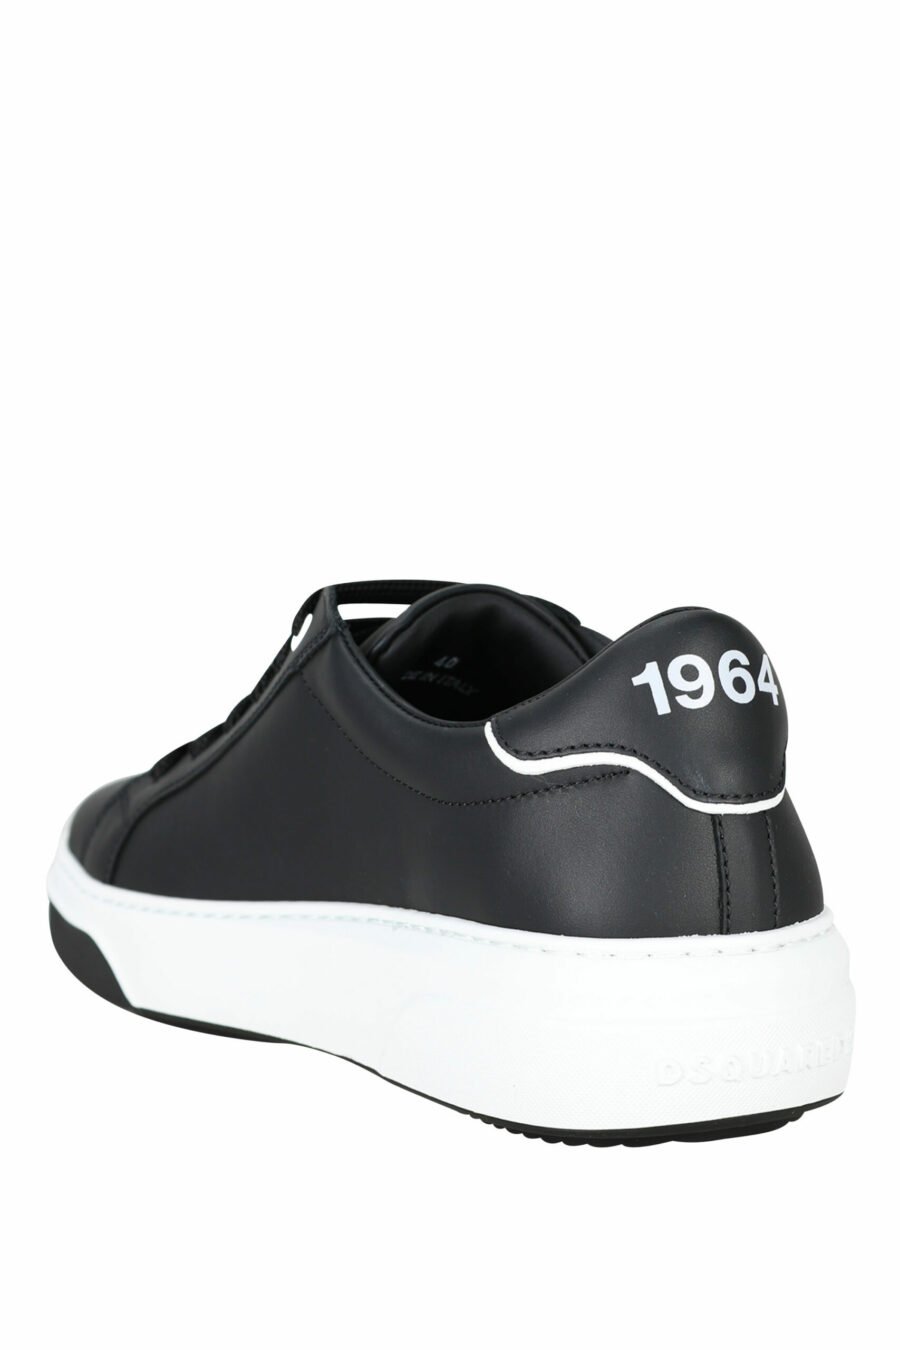 Zapatillas negras con suela bicolor y minilogo - 8055777261170 3 scaled